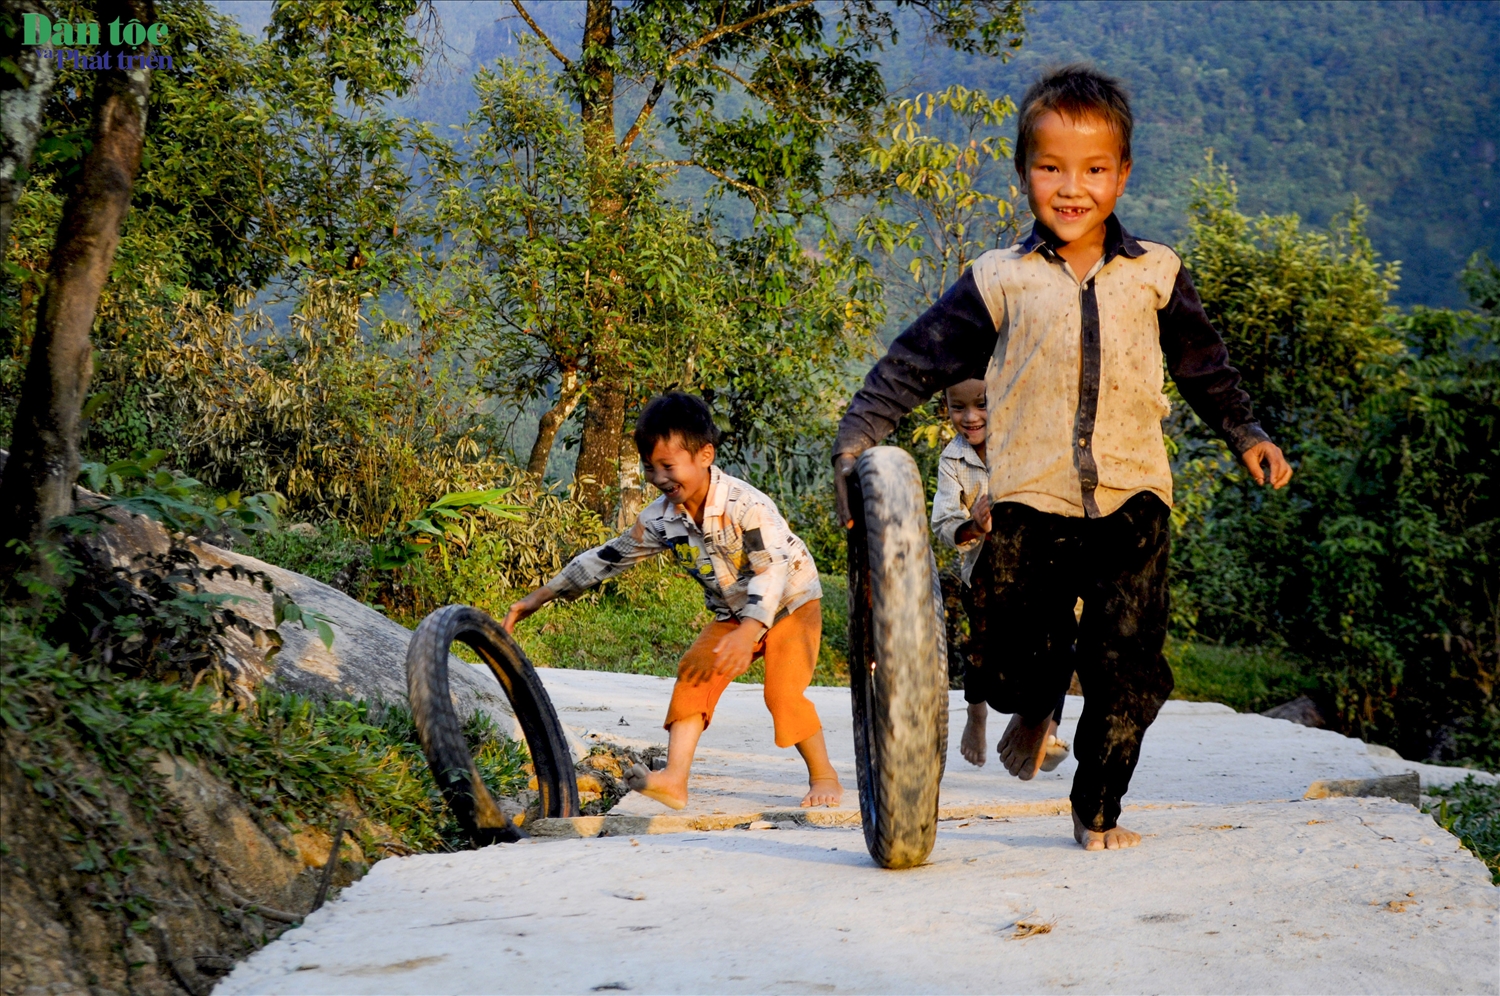 Tại các bản làng, hình ảnh con trẻ tận dụng những chiếc lốp xe bỏ đi làm trò tiêu khiển đã trở nên quen thuộc